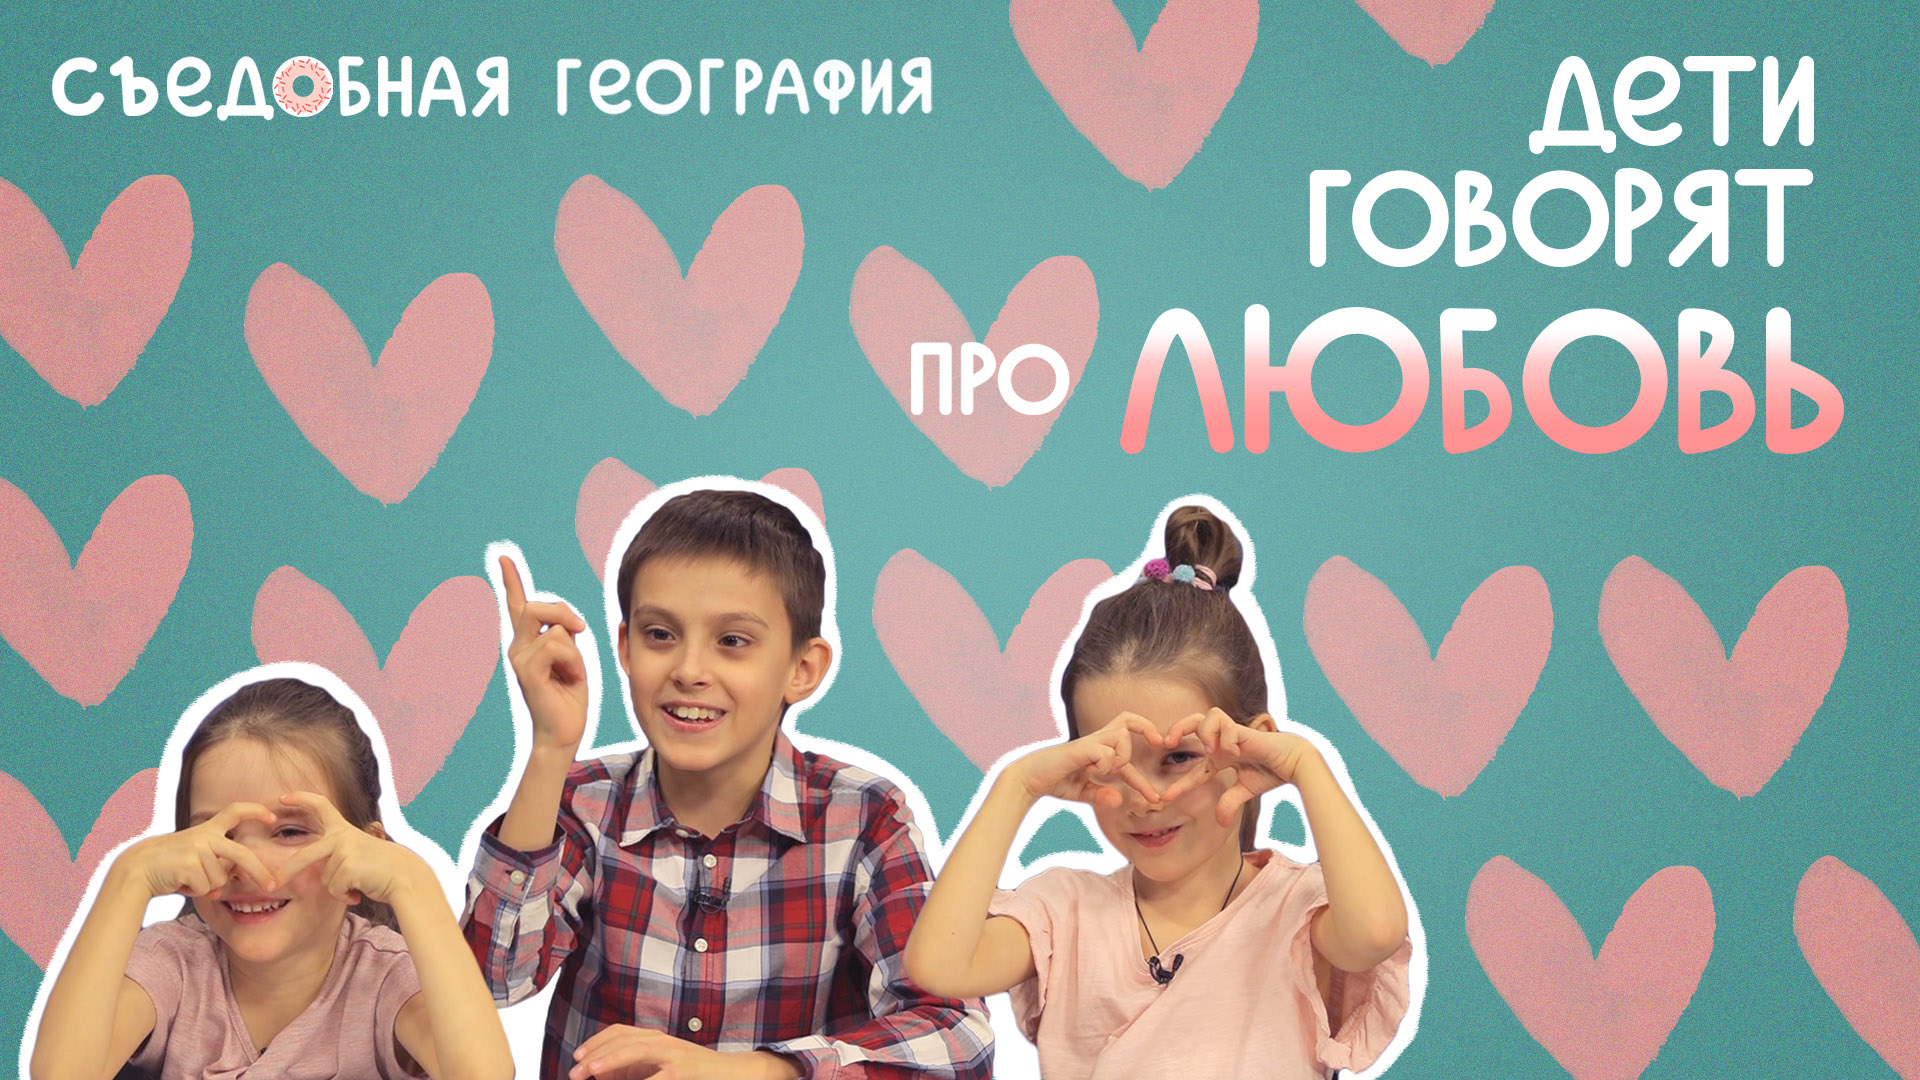 Дети говорят про Любовь| Съедобная География